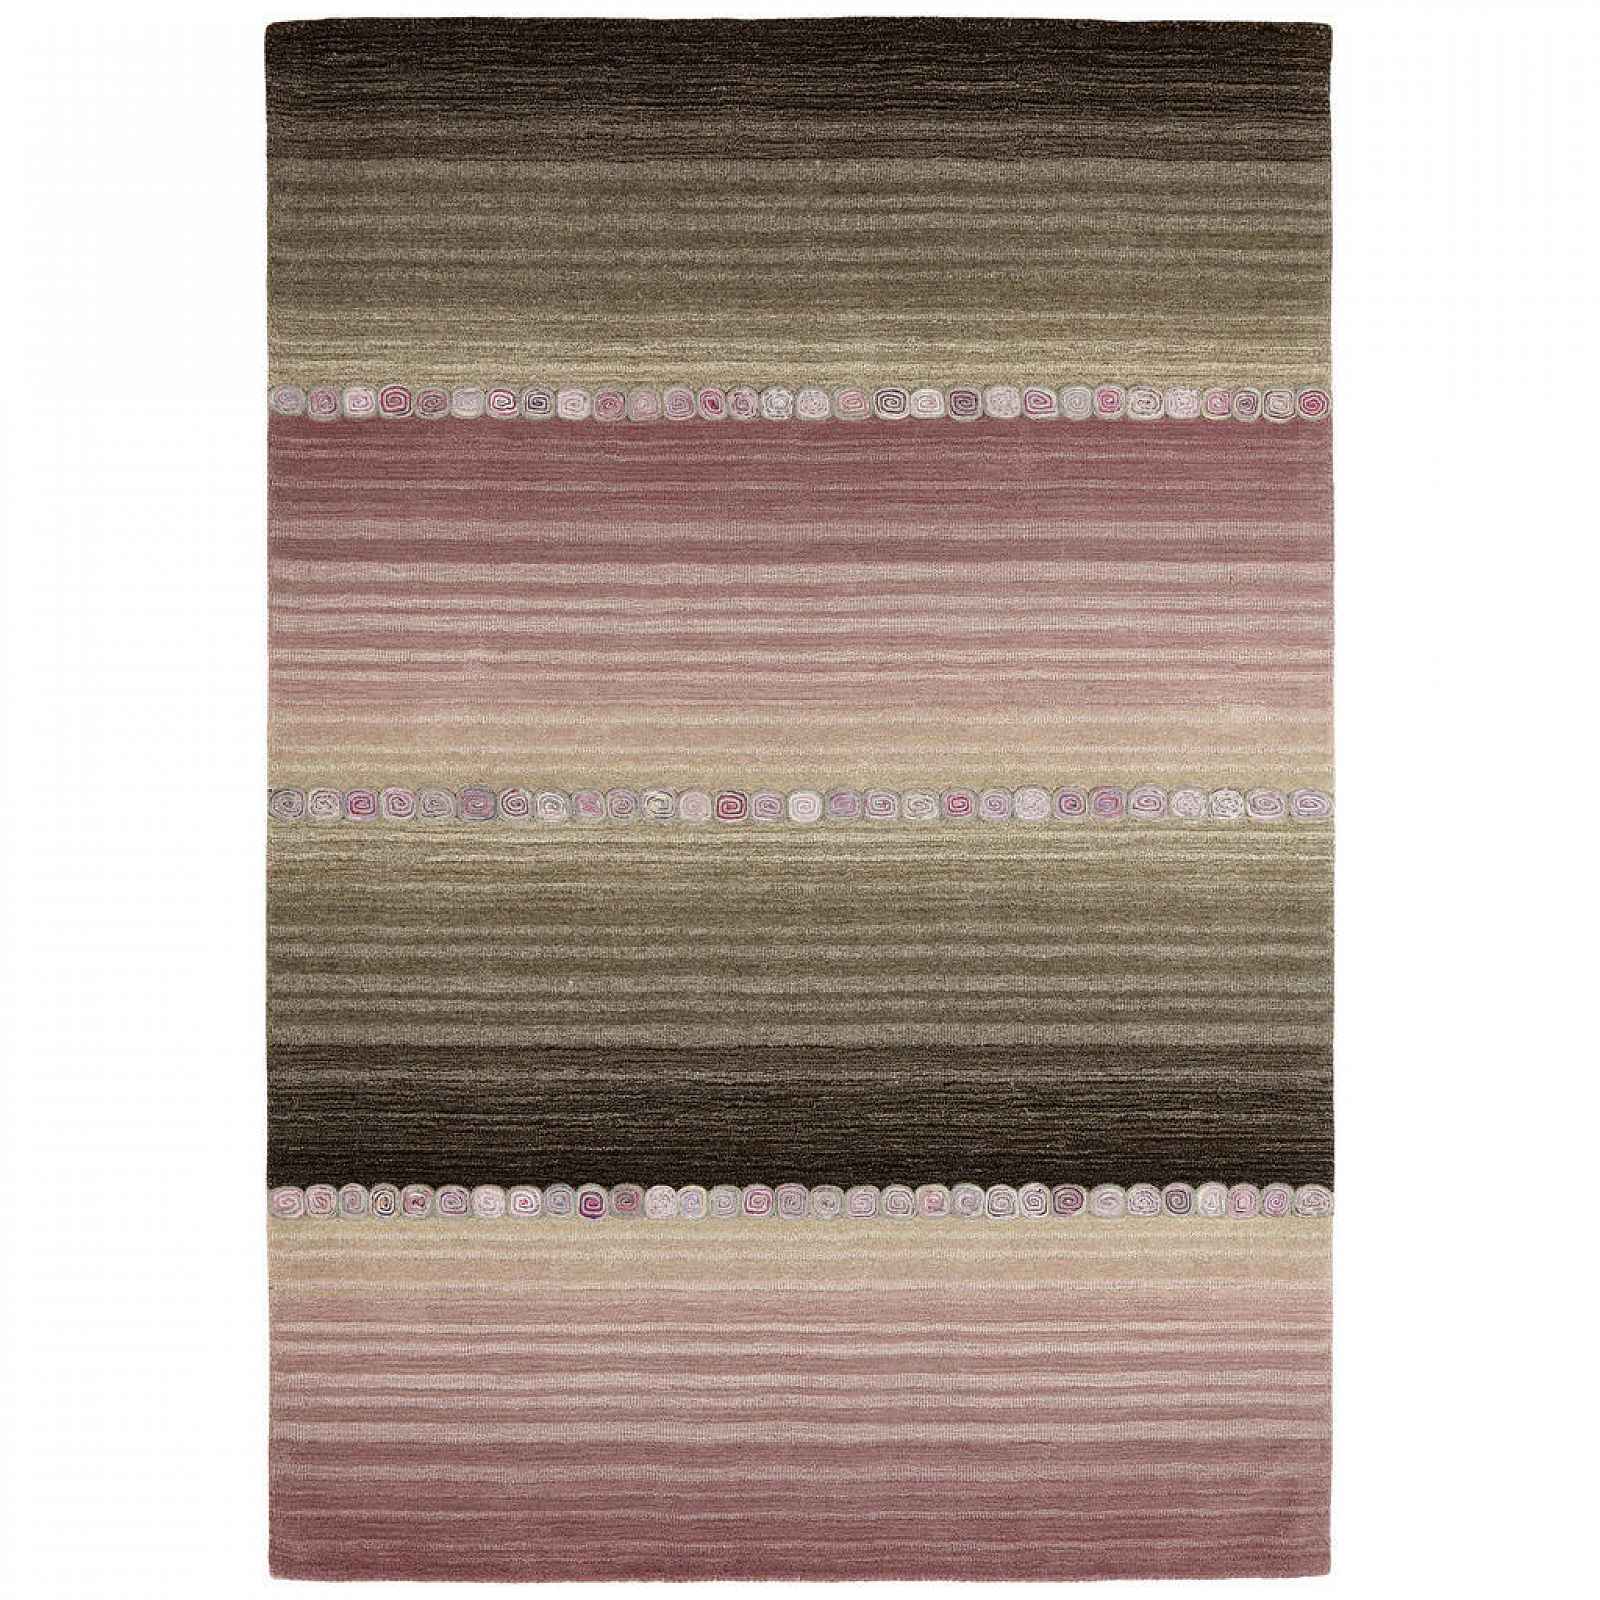 XXXLutz ORIENTÁLNÍ KOBEREC, 250/350 cm, šedá, pink Cazaris - Orientální koberce - 004345035177